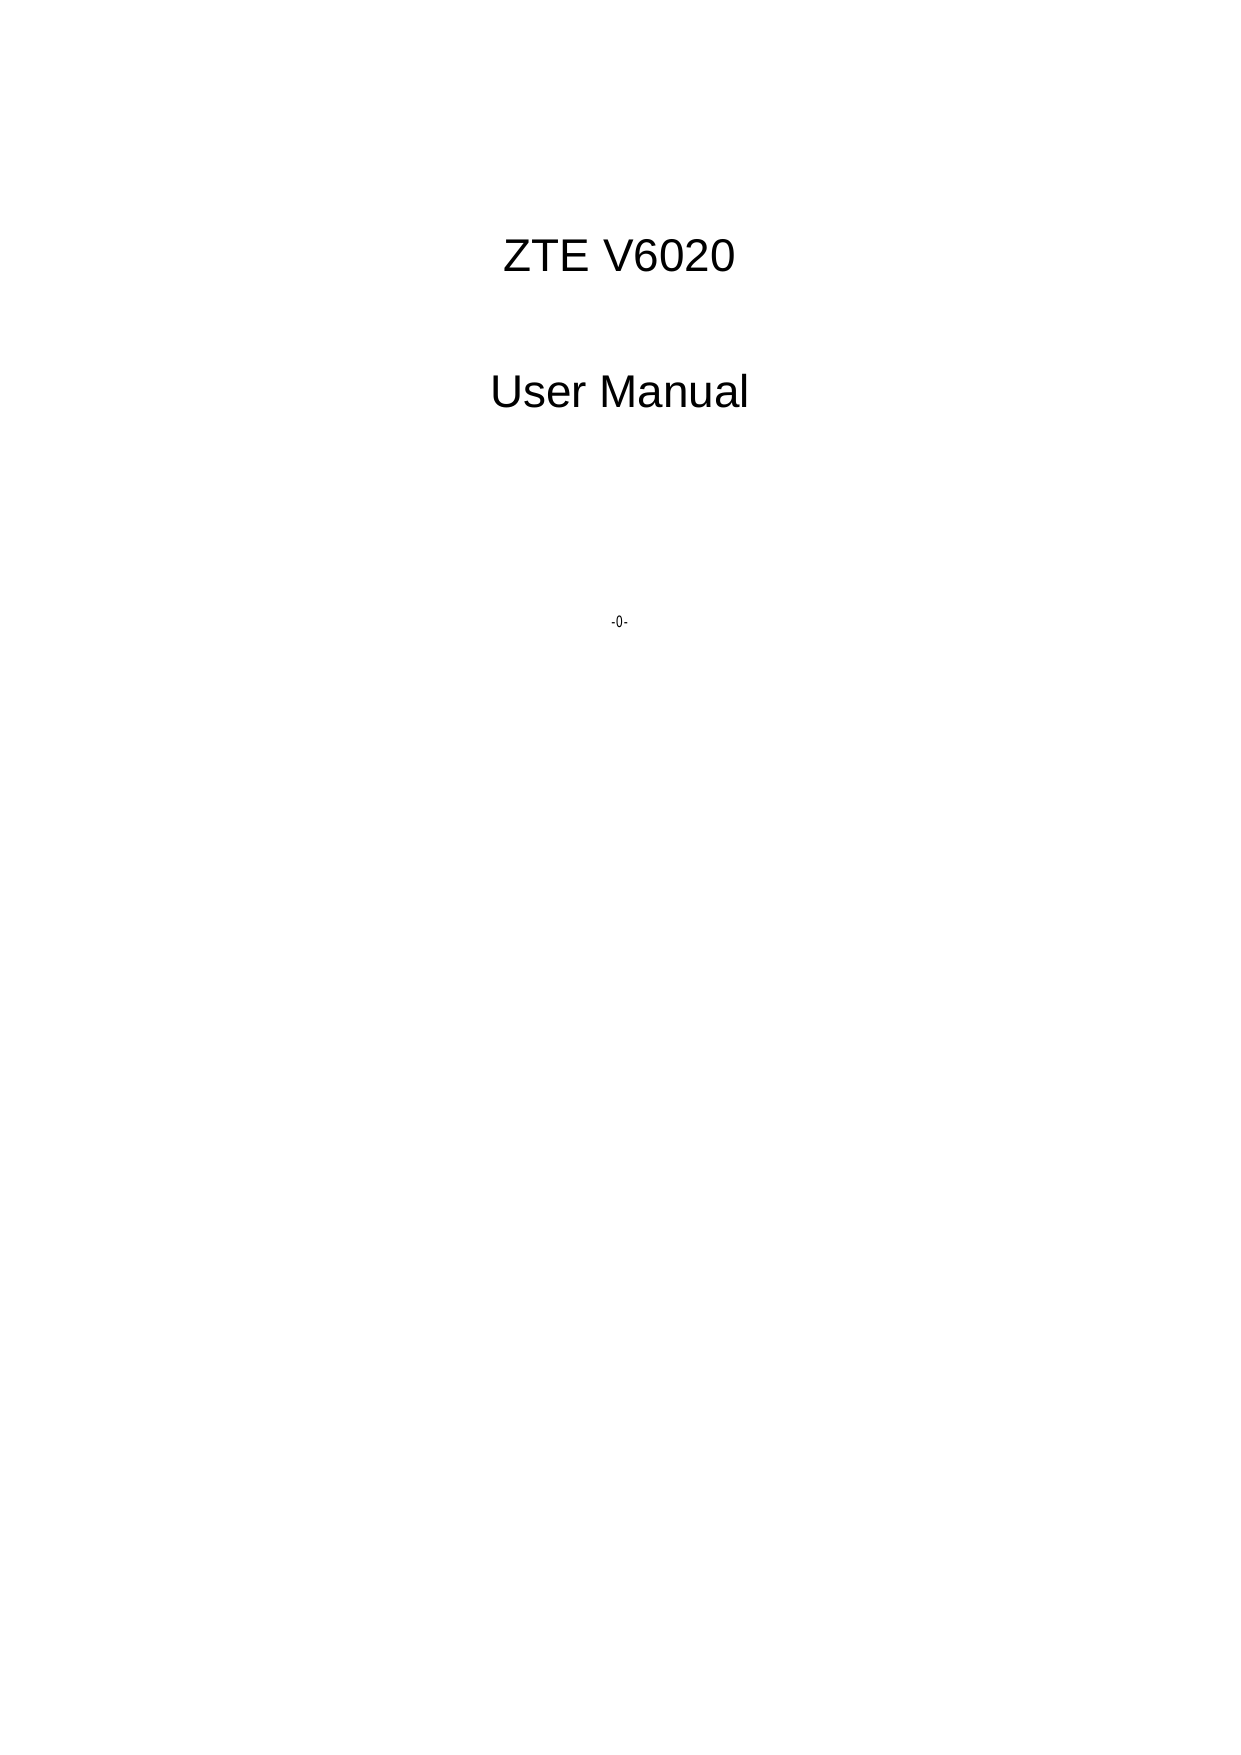  -0-   ZTE V6020  User Manual 